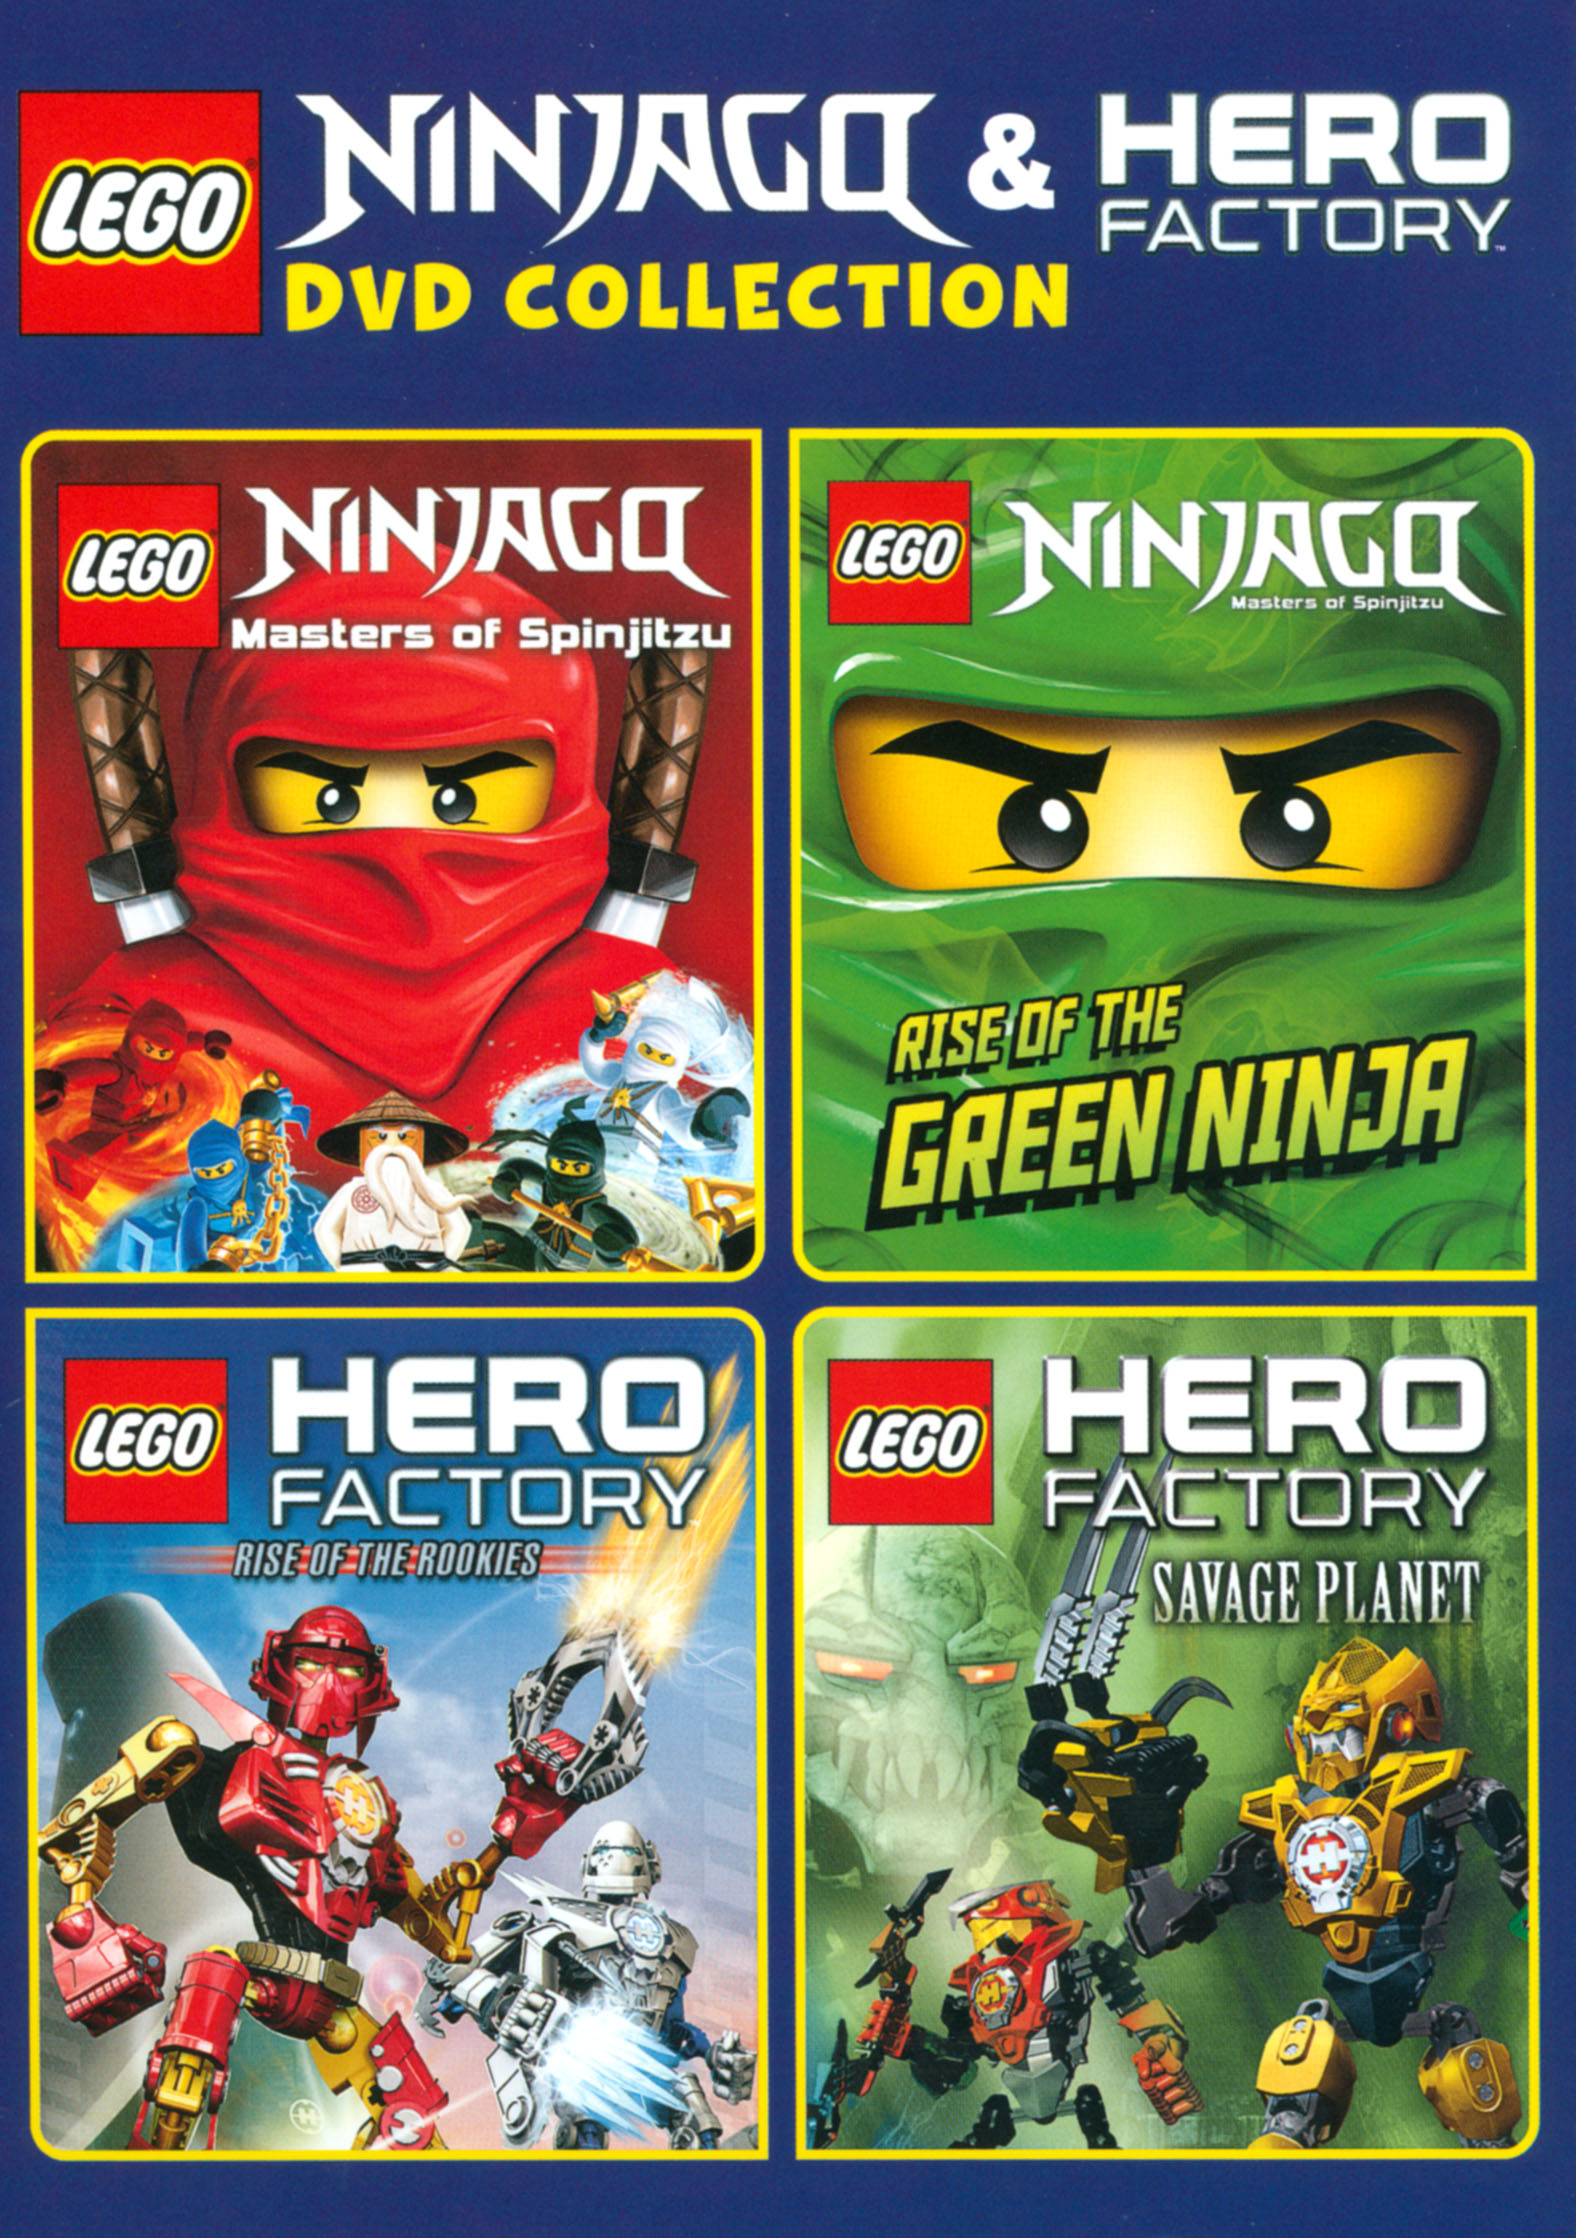 astronaut Gelijkenis warmte LEGO Ninjago: and Hero Factory Collection [4 Discs] [DVD] - Best Buy